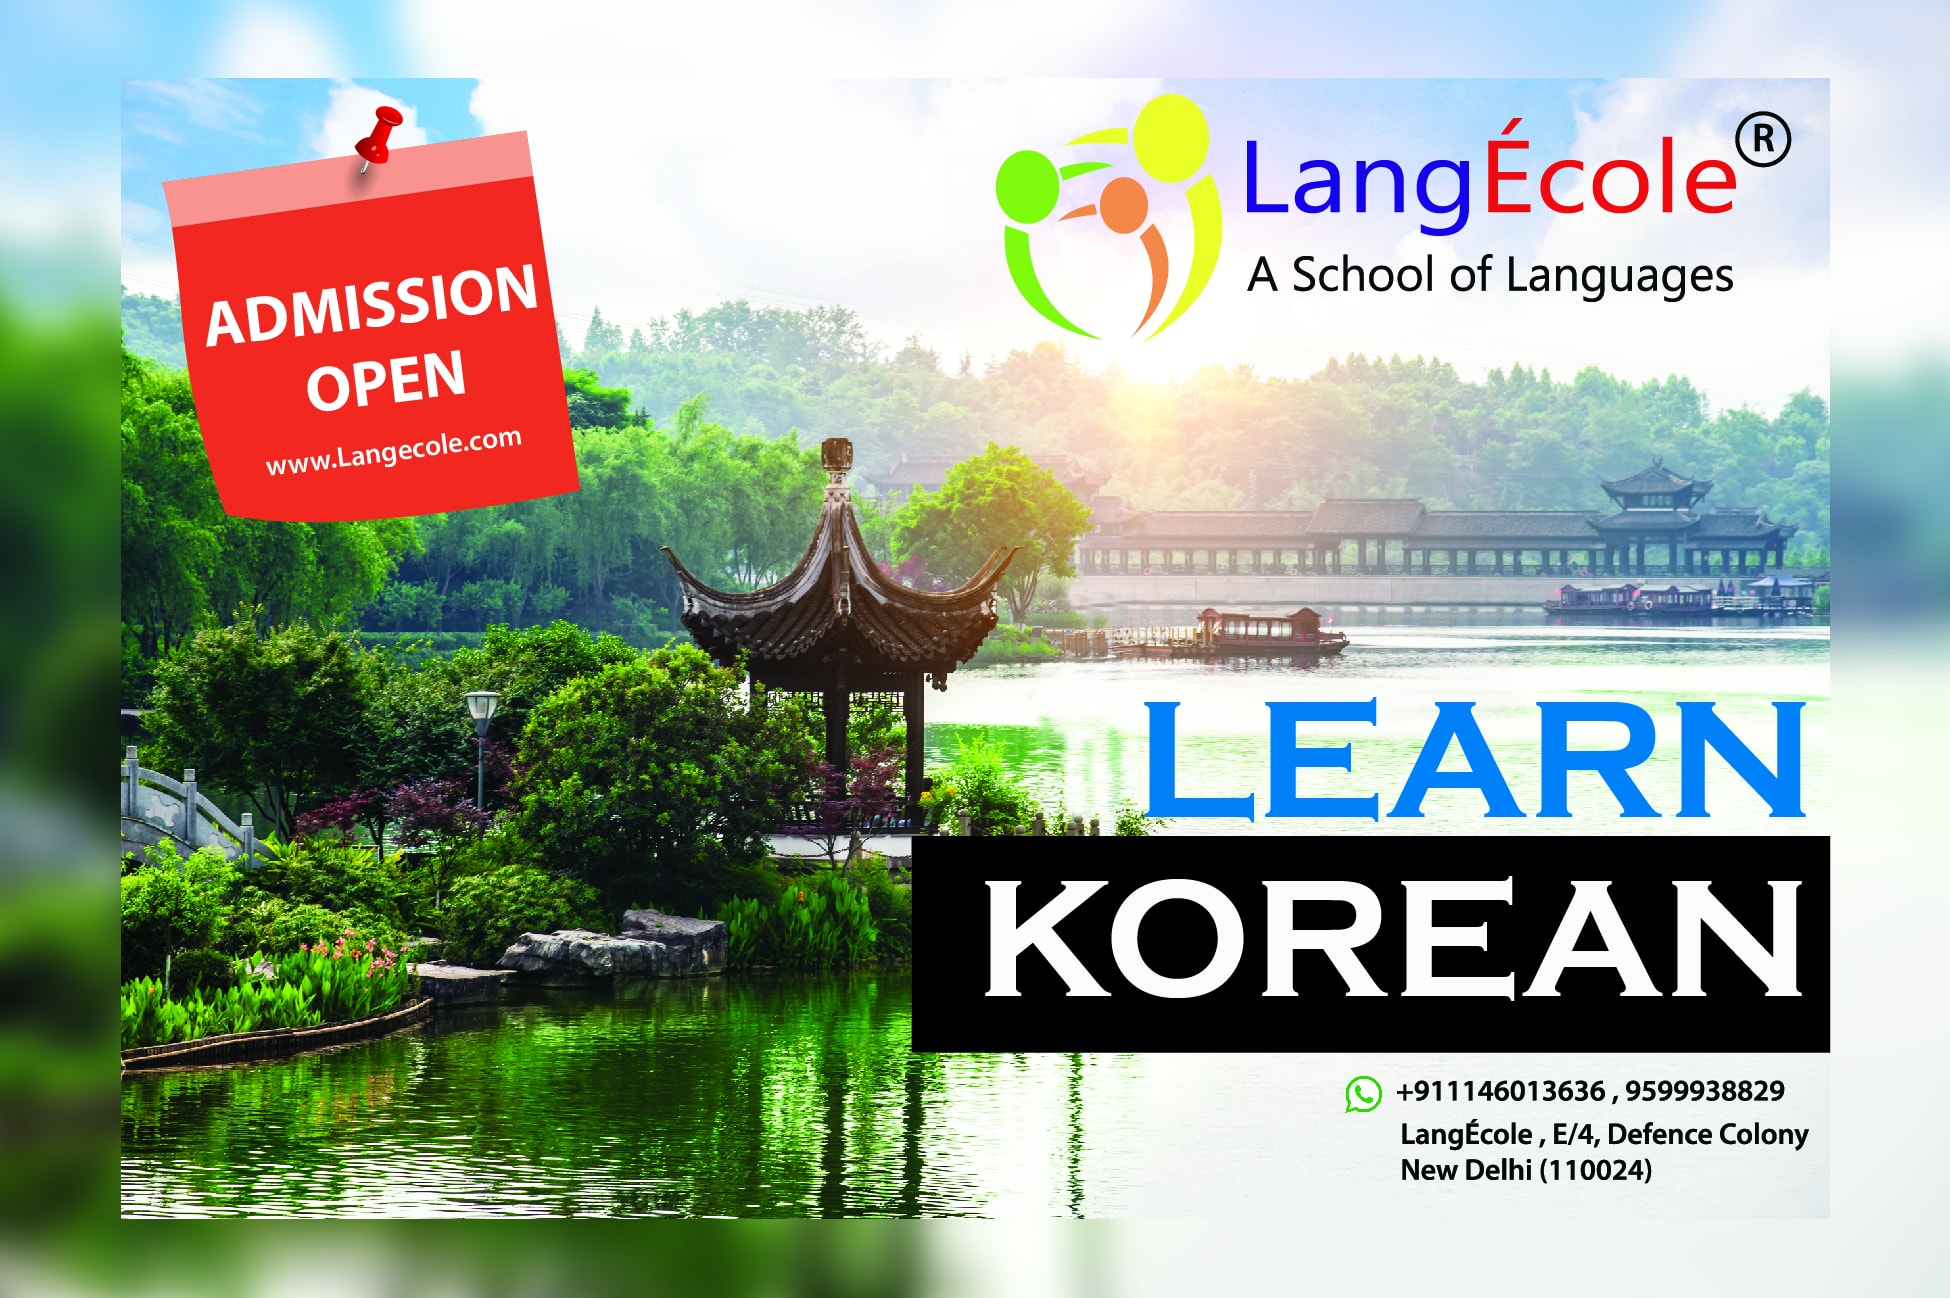 Learn korean language, language institute in delhi, bangalore, langecole